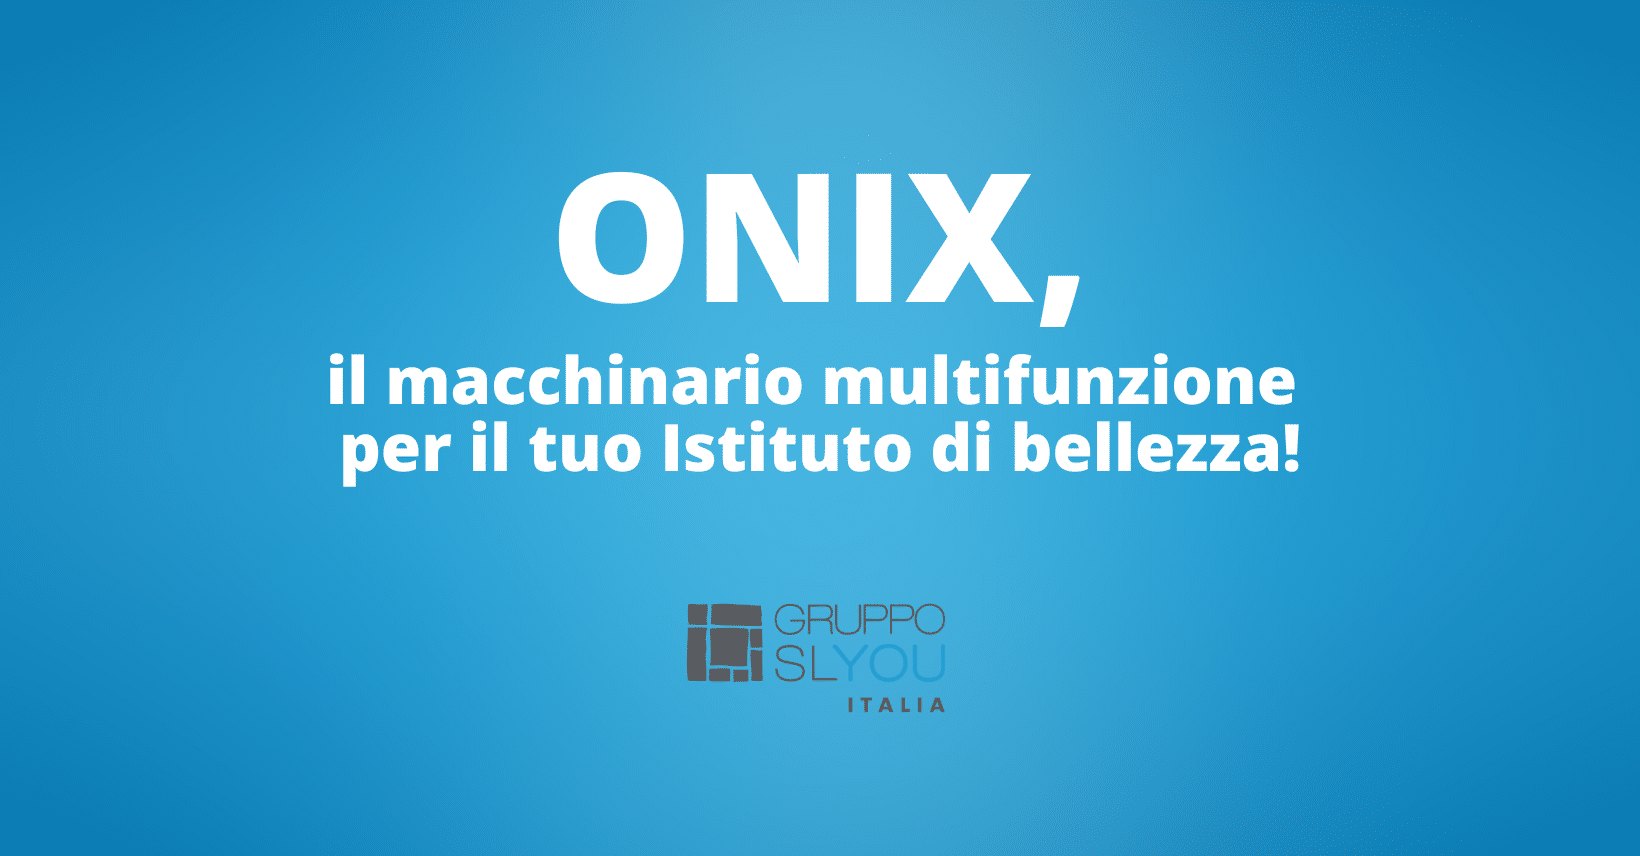 Onix, macchinario estetica avanzata viso e corpo